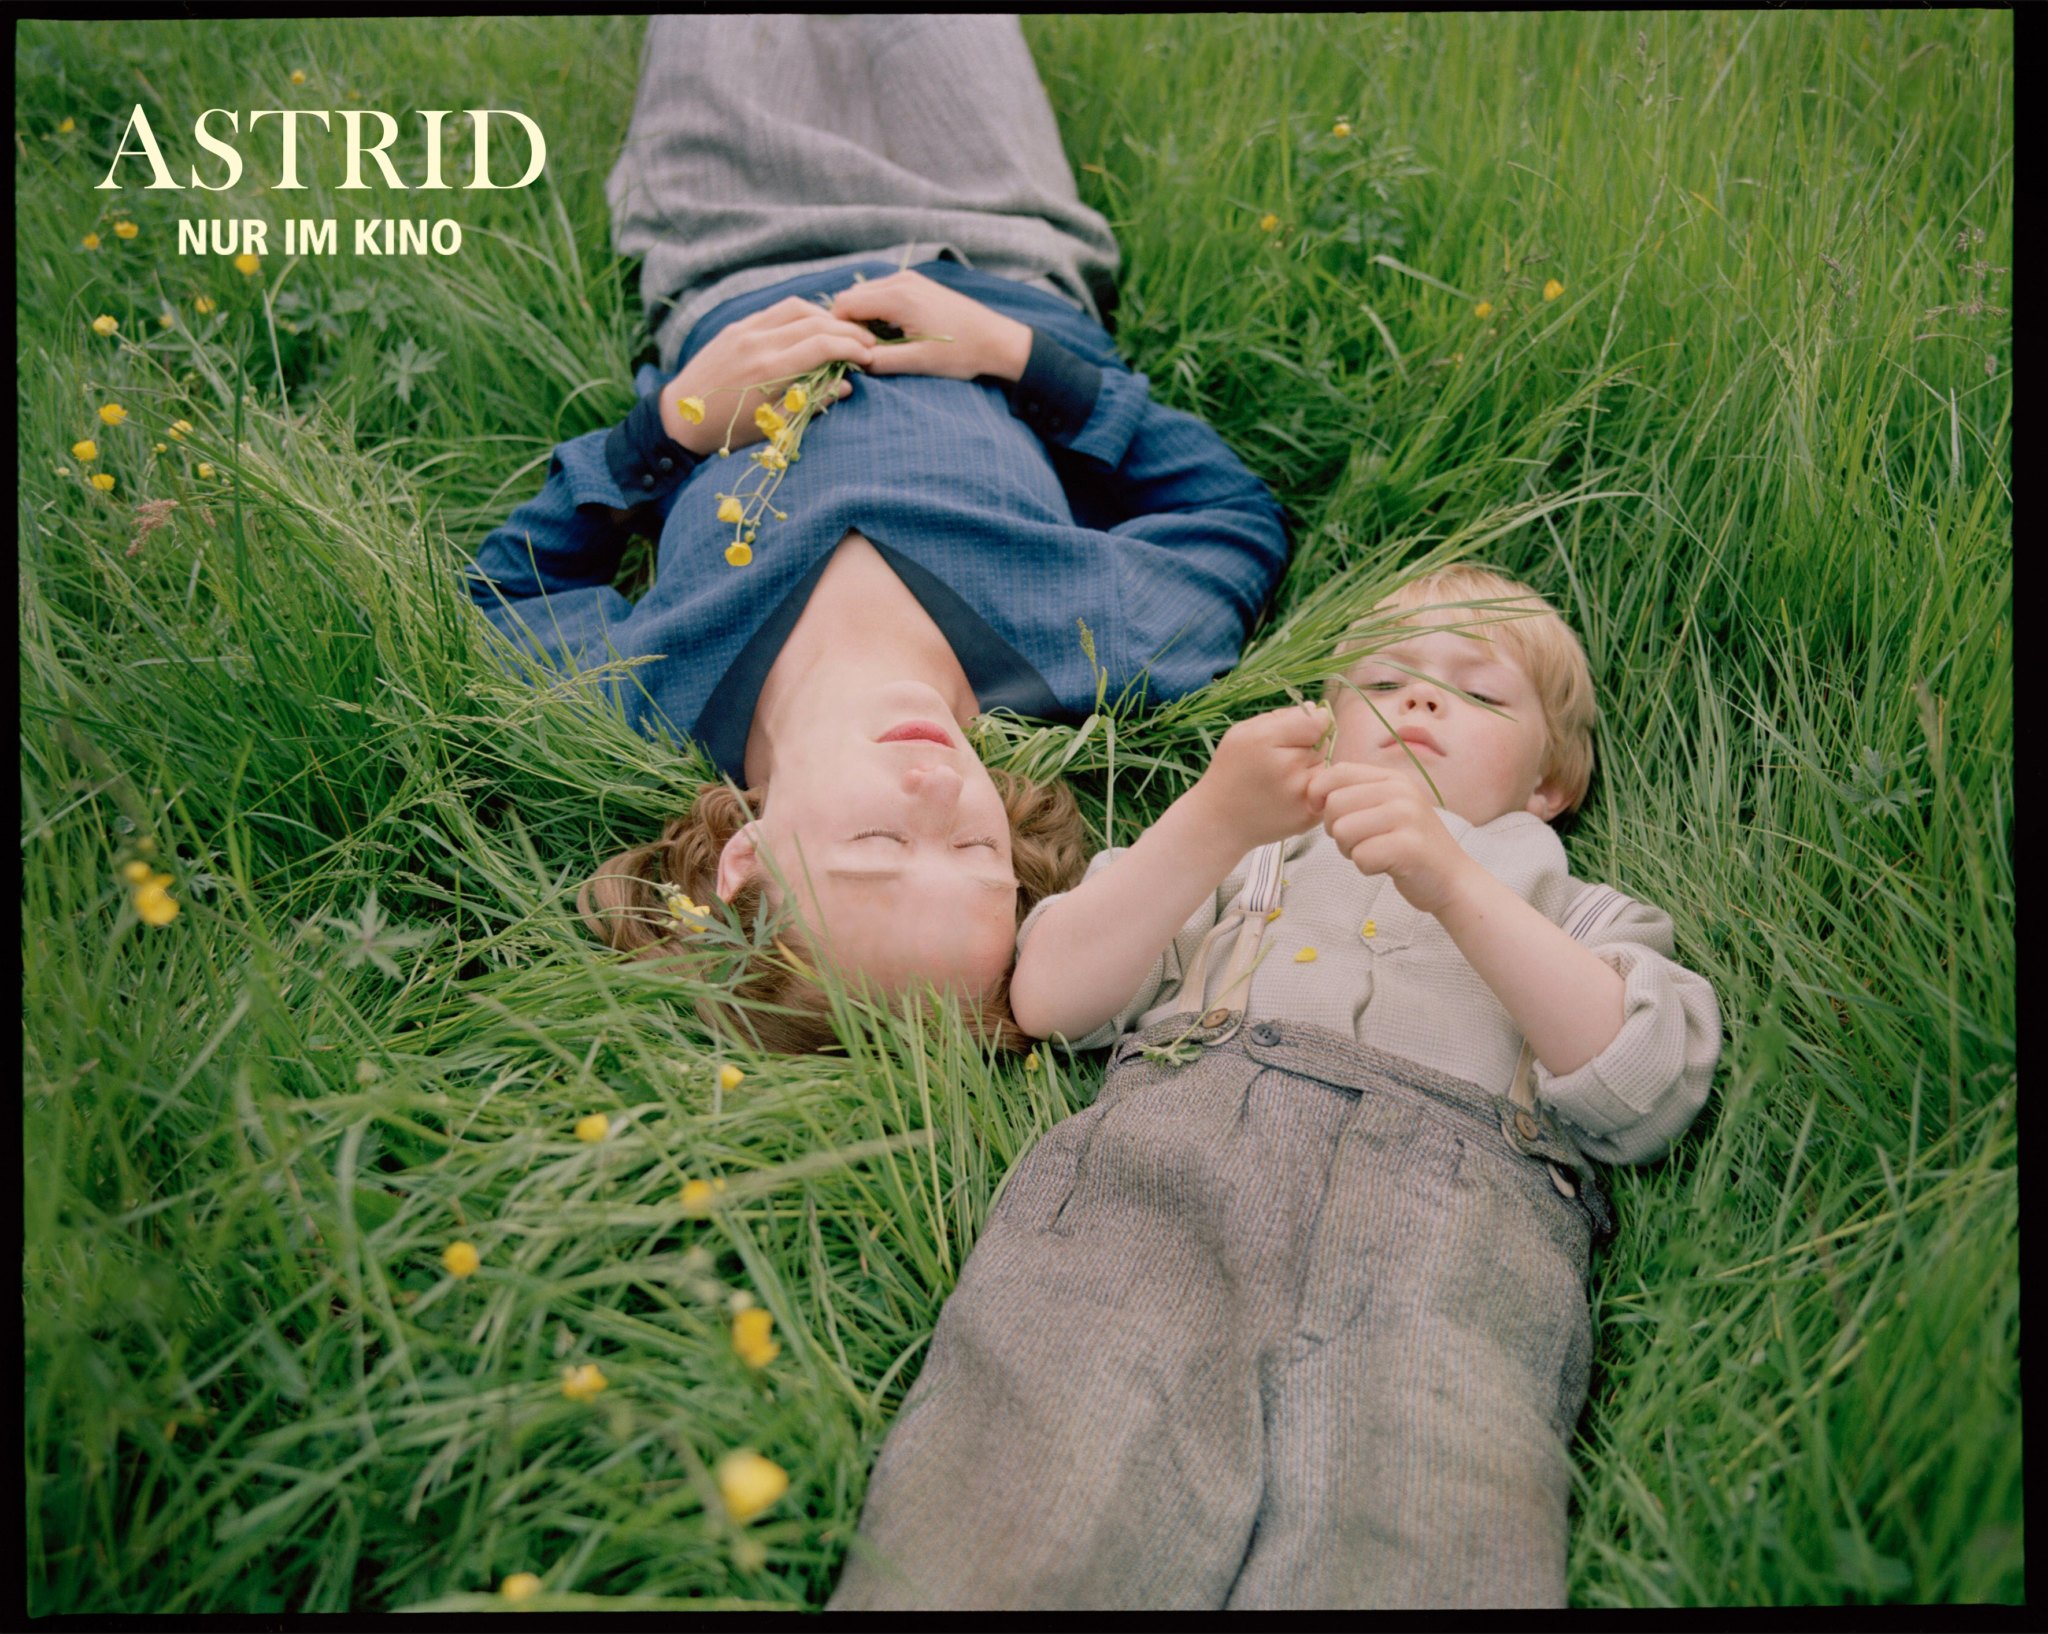 Filmstill aus "Astrid": Zwei Kinder liegend im Gras